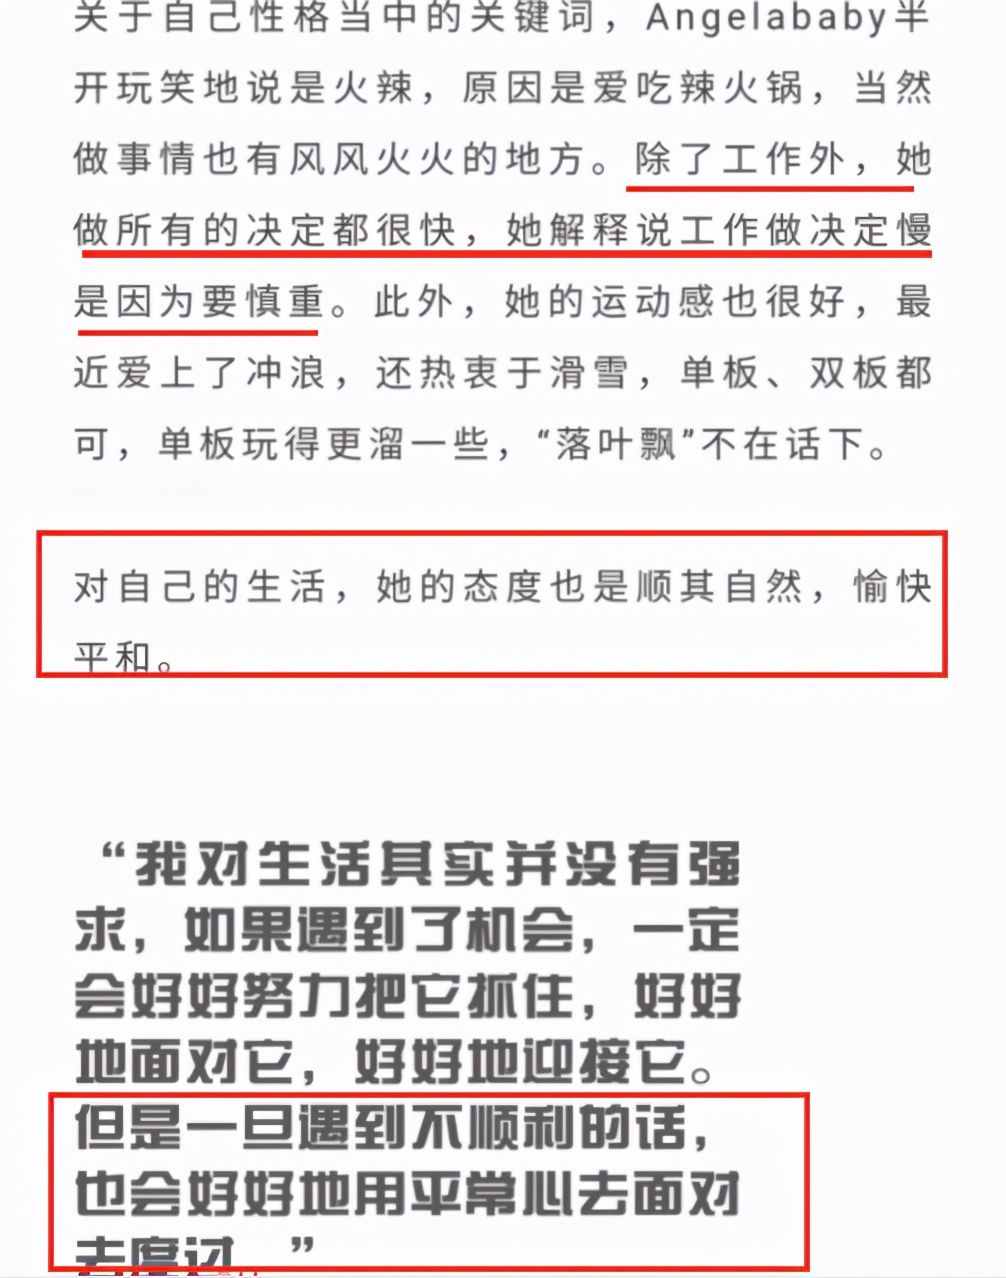 黄晓明否认和杨颖离婚，baby在回复中从未提及“老公”这个字眼